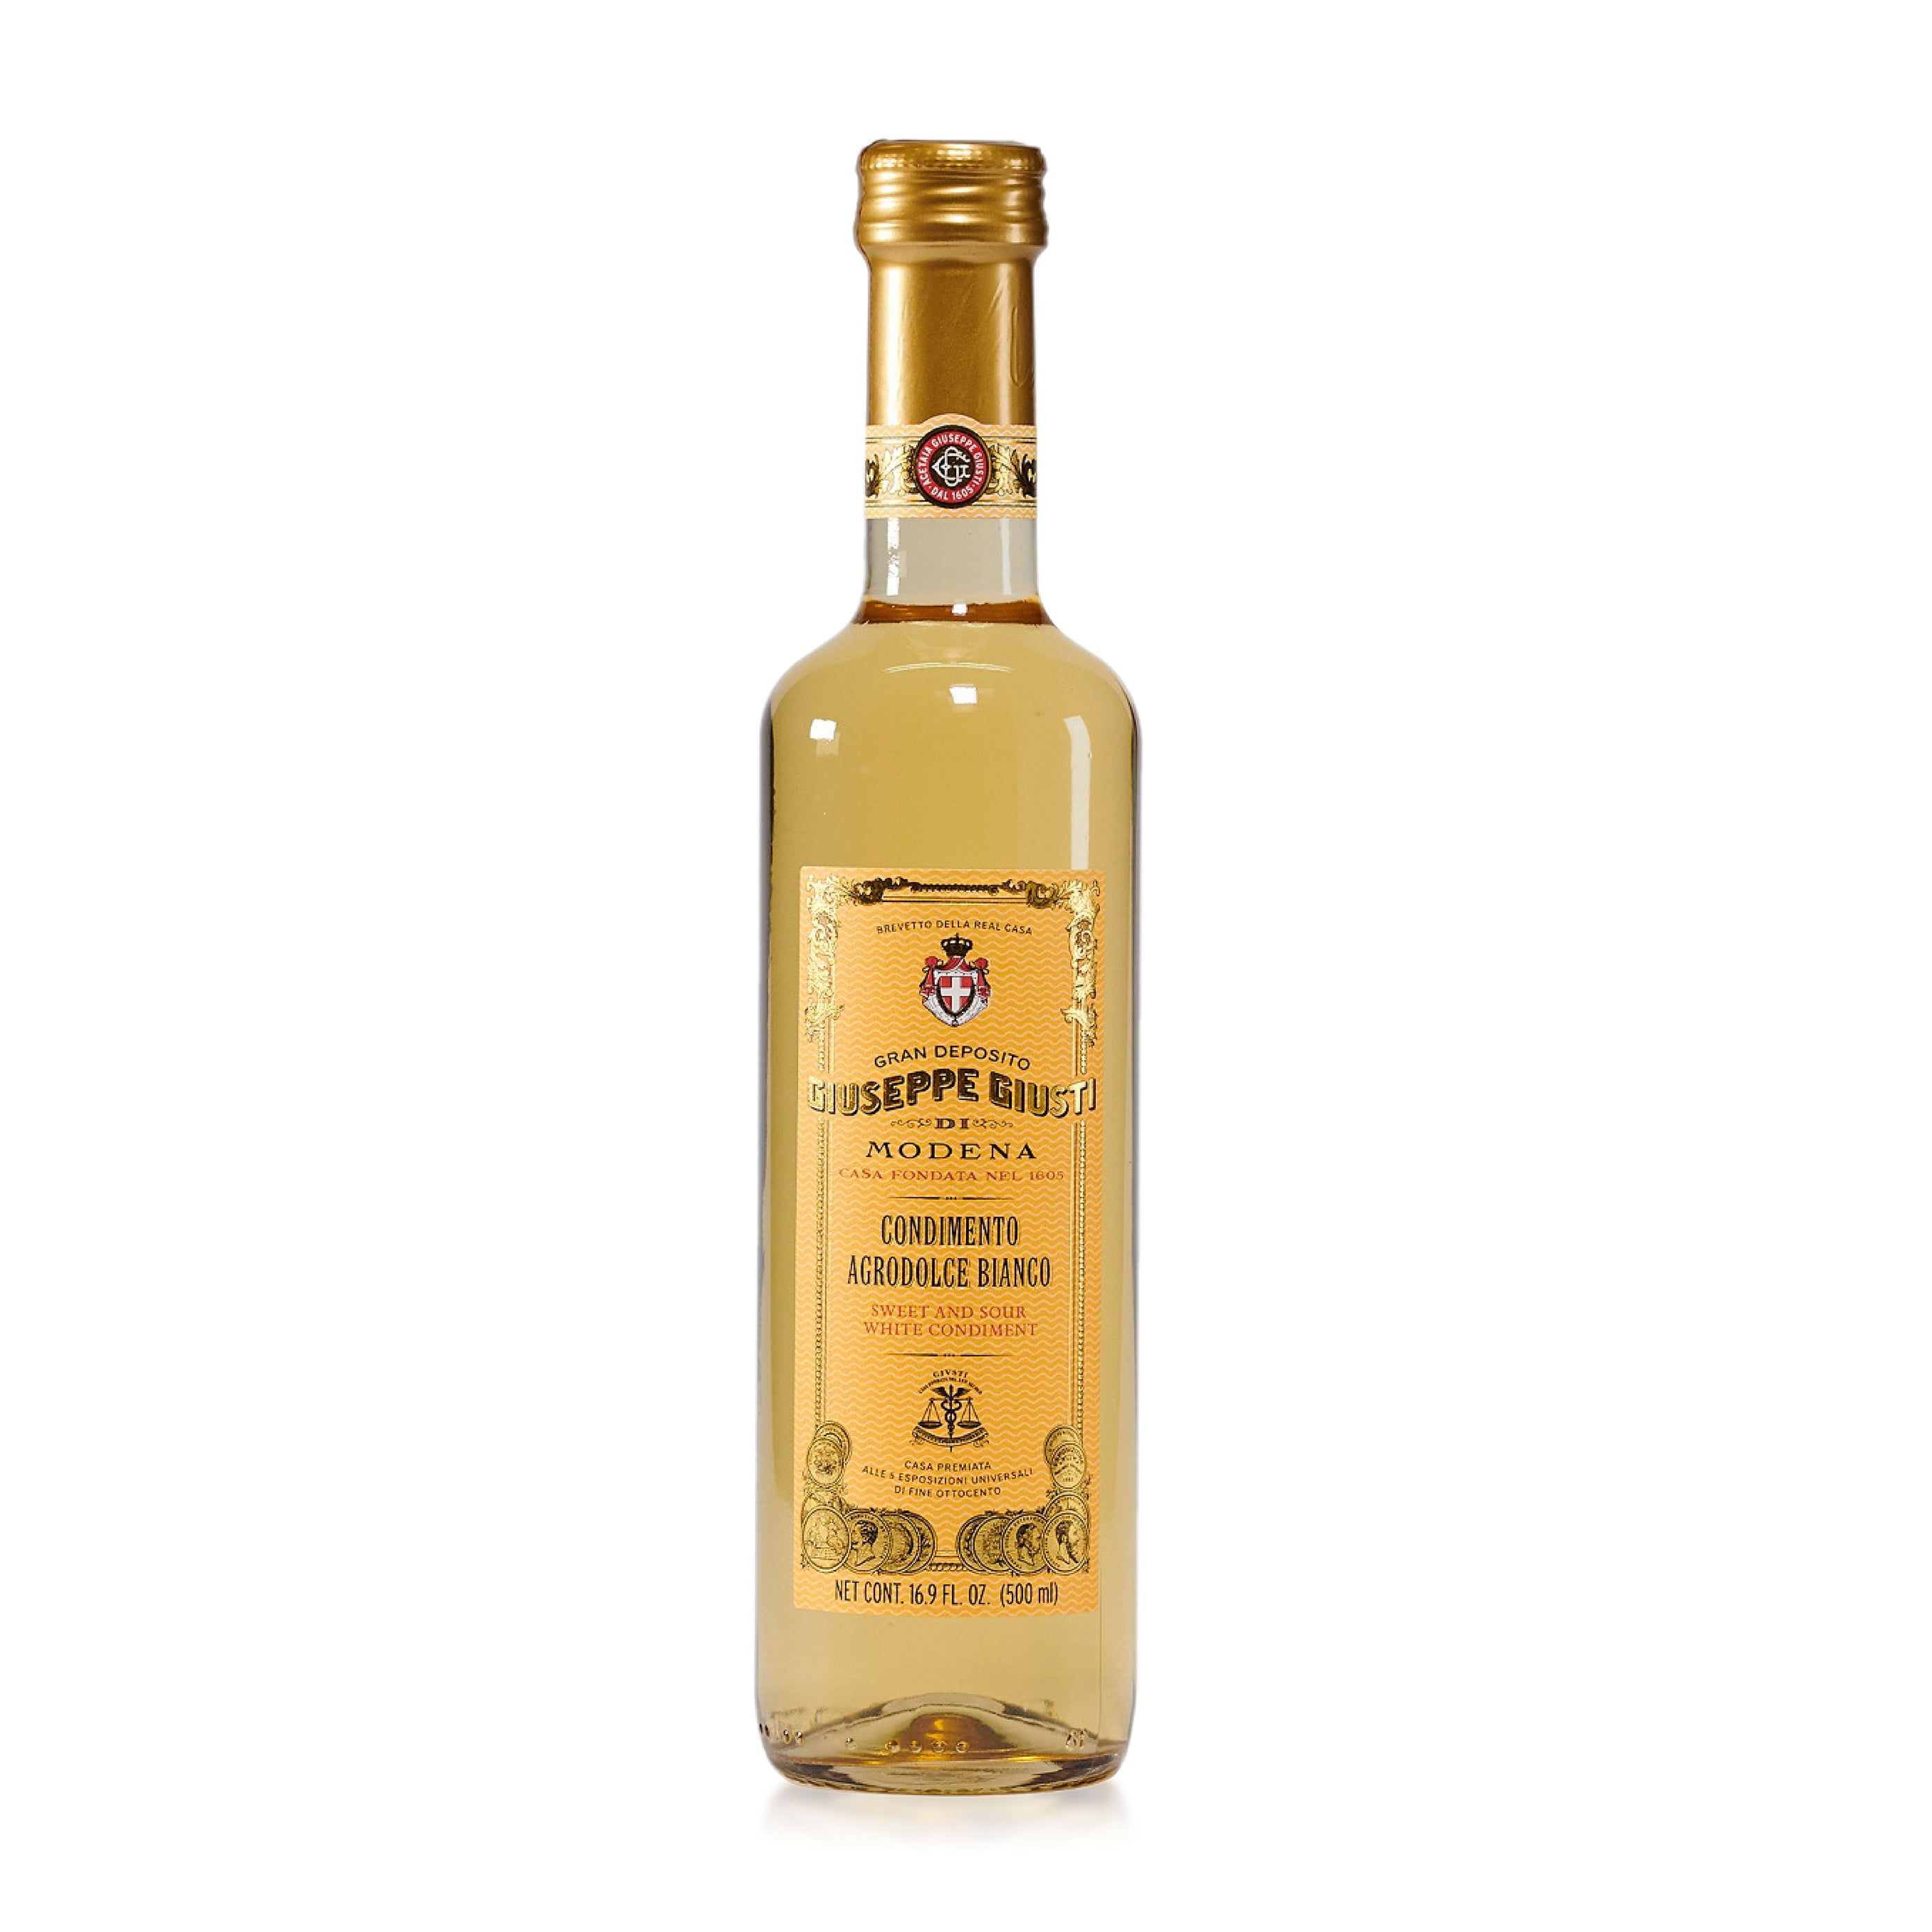 White Balsamic Vinegare condiment of Modena by Giusti